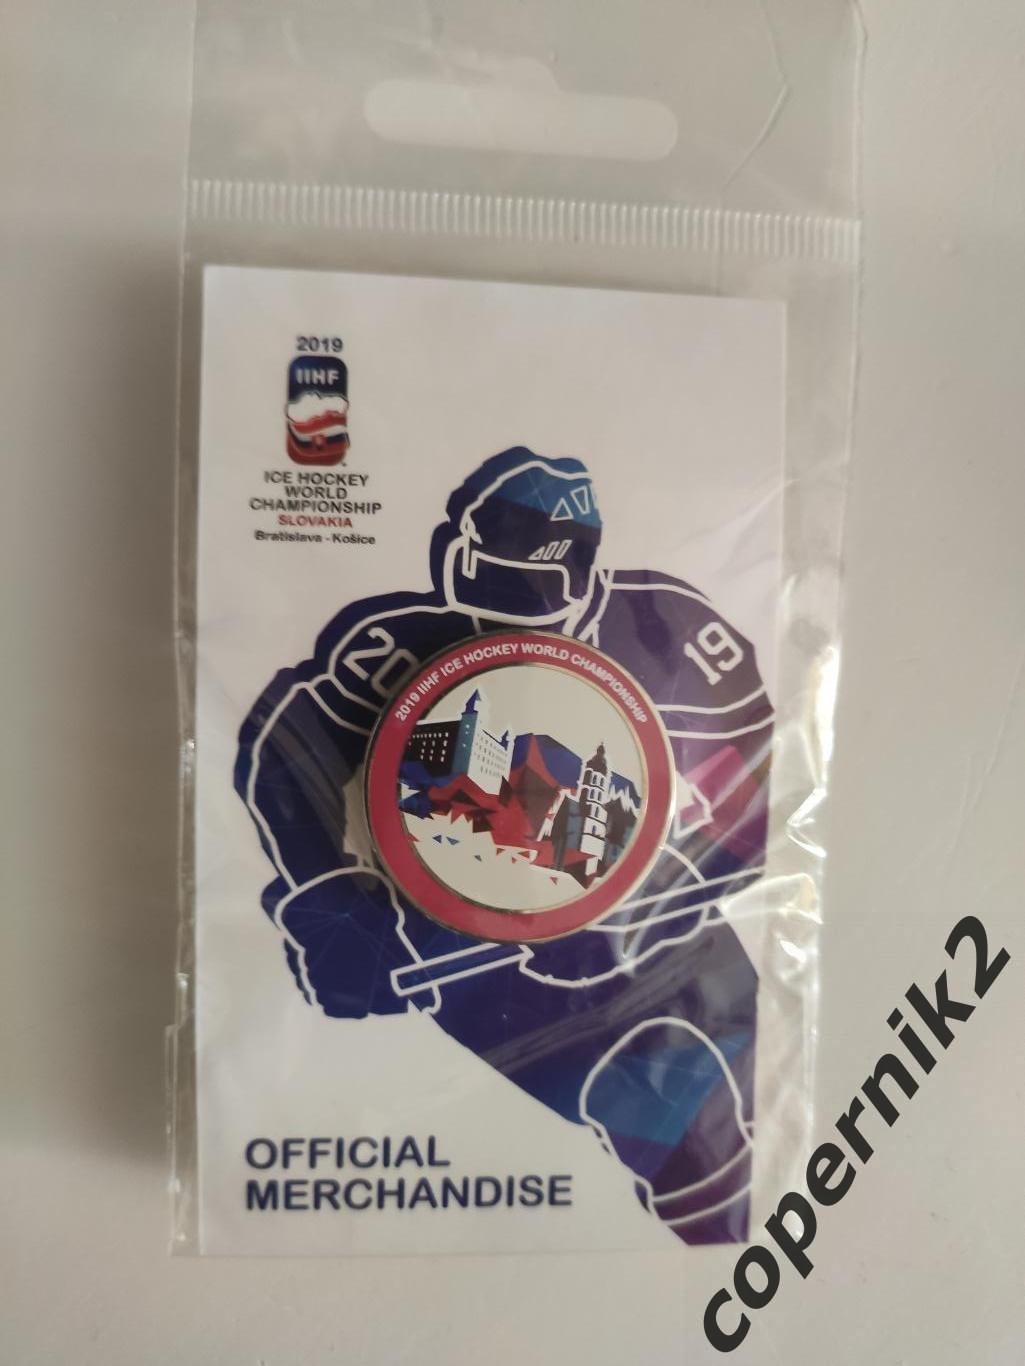 Чемпионат мира по хоккею - 2019 Словакия. (офиц знак)